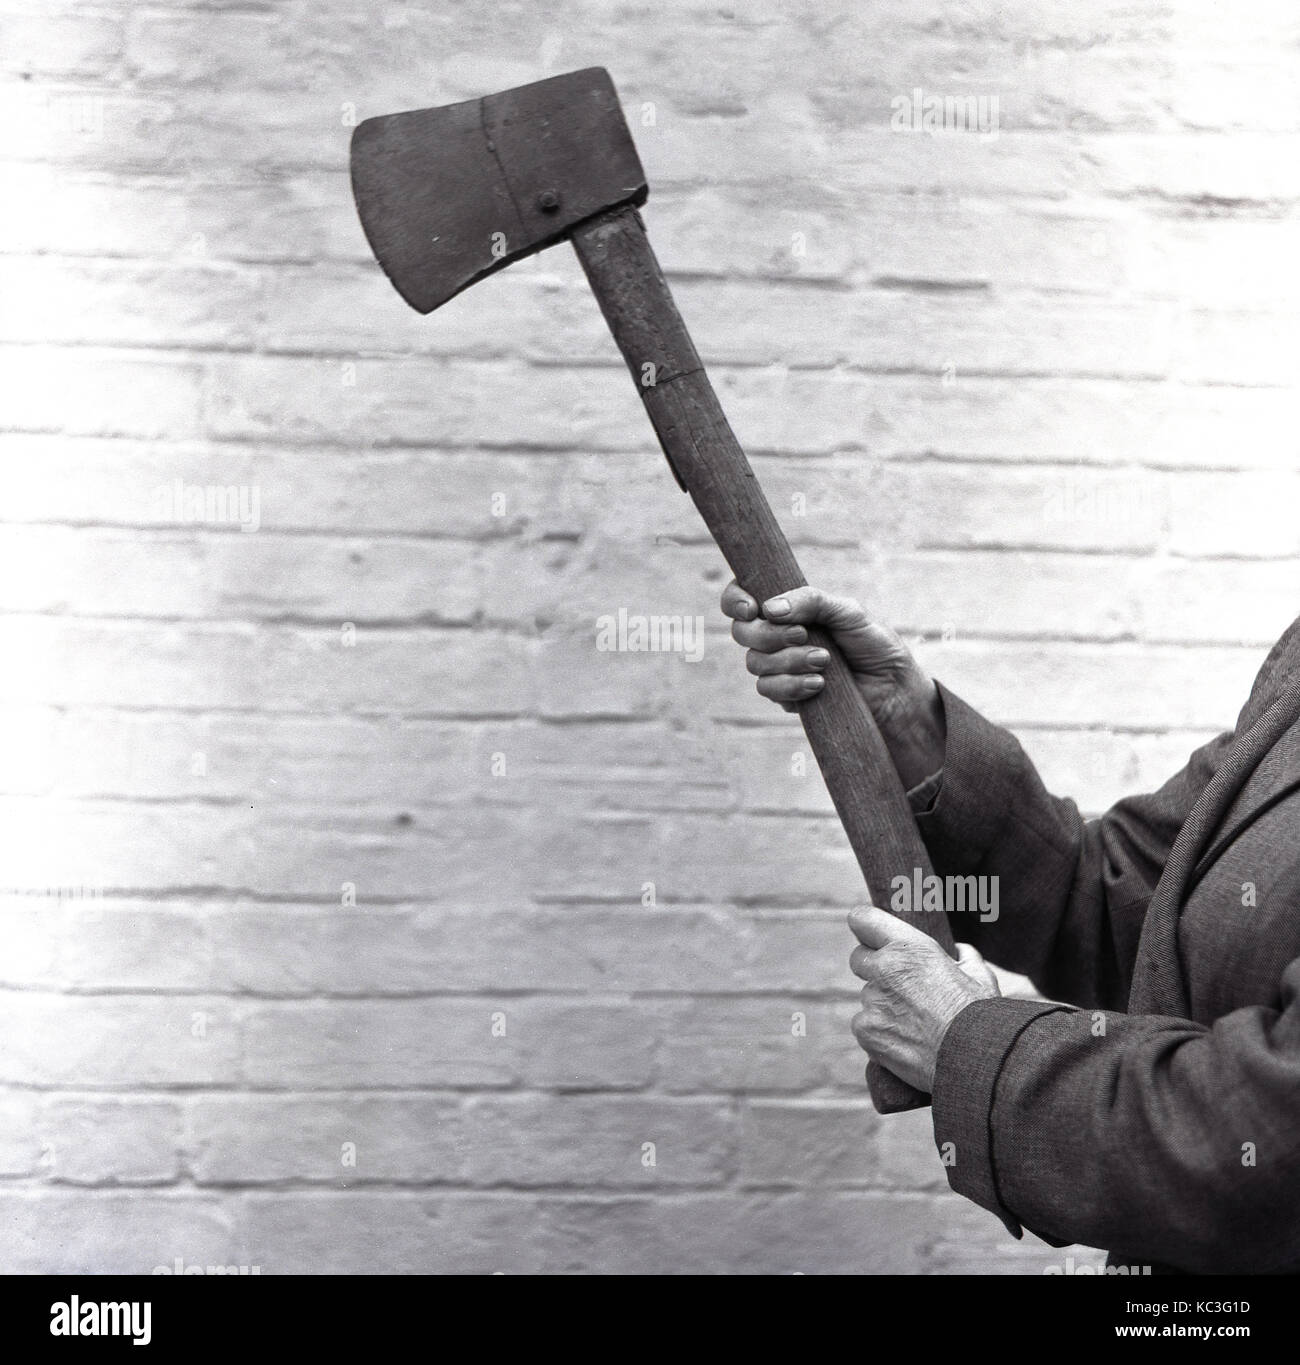 1964, storico, la persona che detiene una grande ax, uno strumento utilizzato per suddividere il legno. La ax ha un andamento curvo manico in legno e ferro blade ed è tenuto a dimostrare che, per dimostrare che a un pubblico, Inghilterra, Regno Unito. Foto Stock